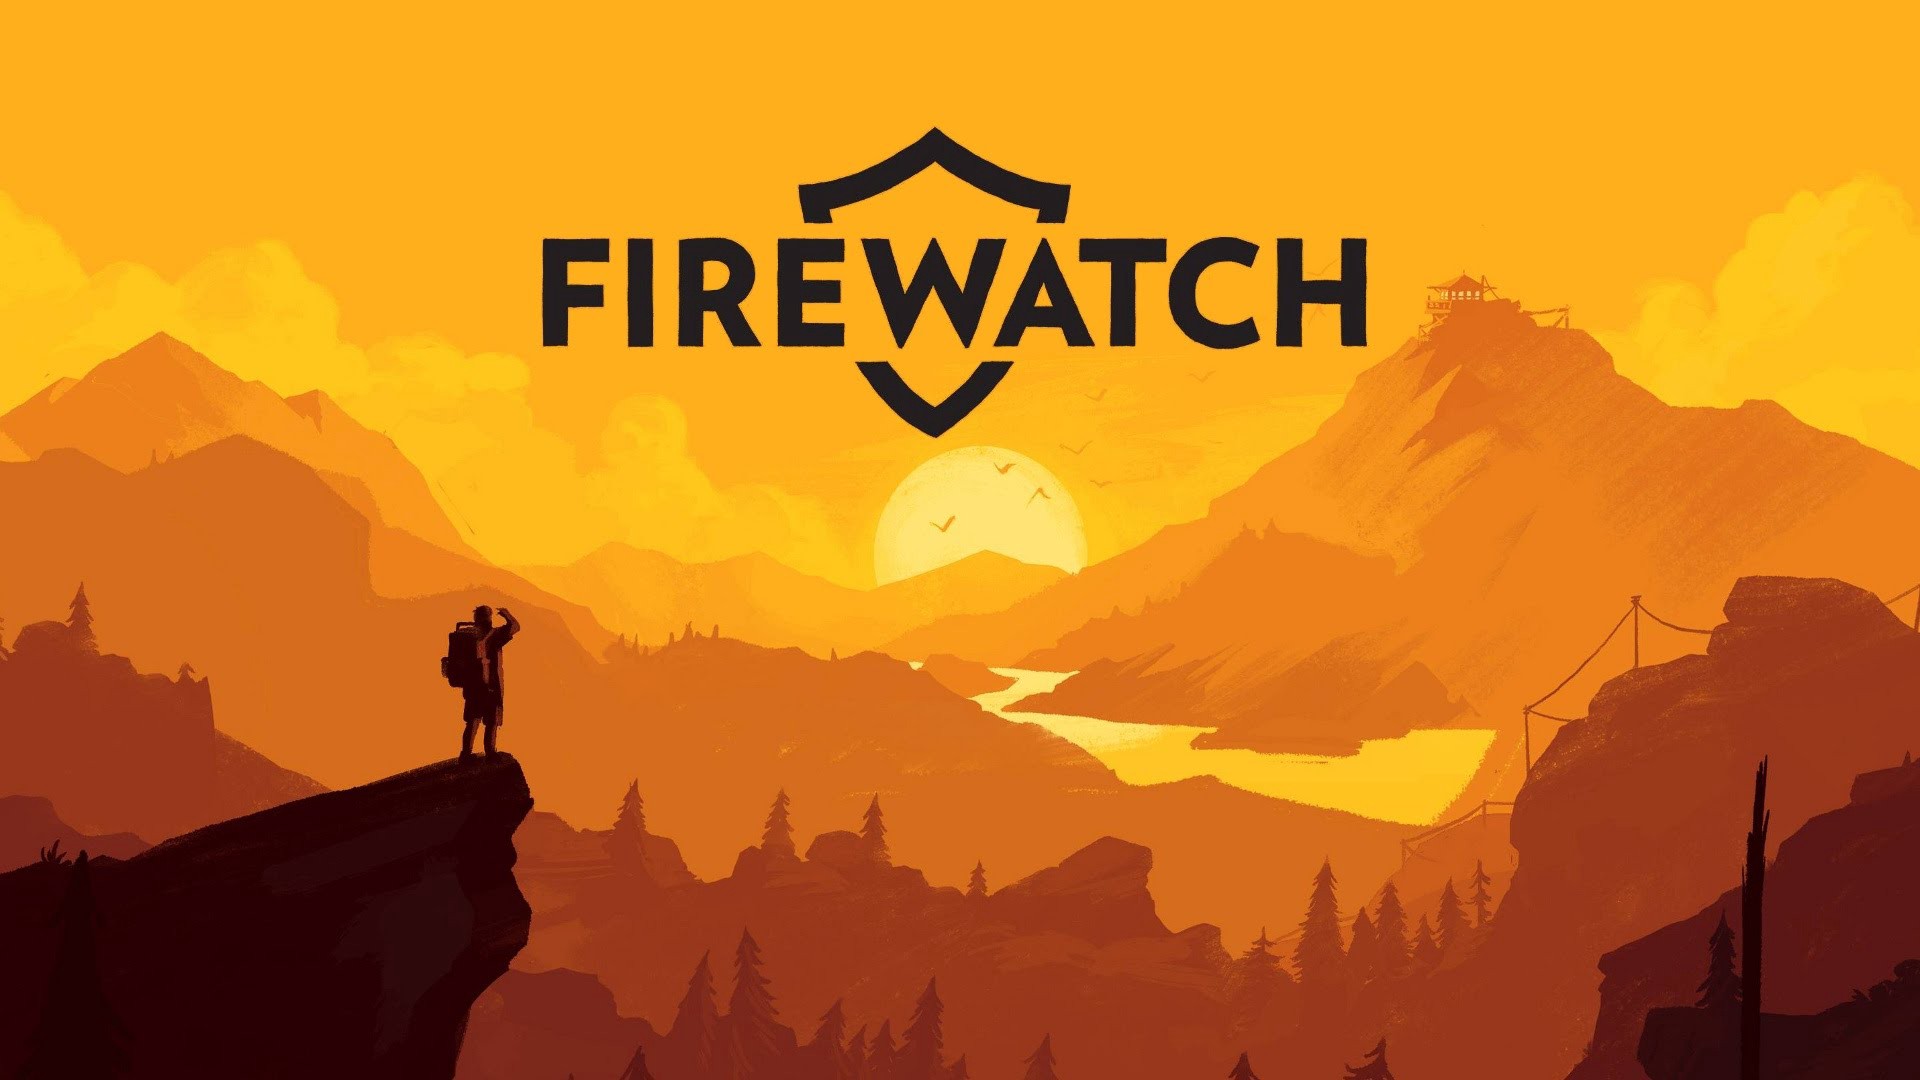 فایرواچ (Firewatch) تا چند روز دیگر برای نینتندو سوییچ عرضه خواهد شد